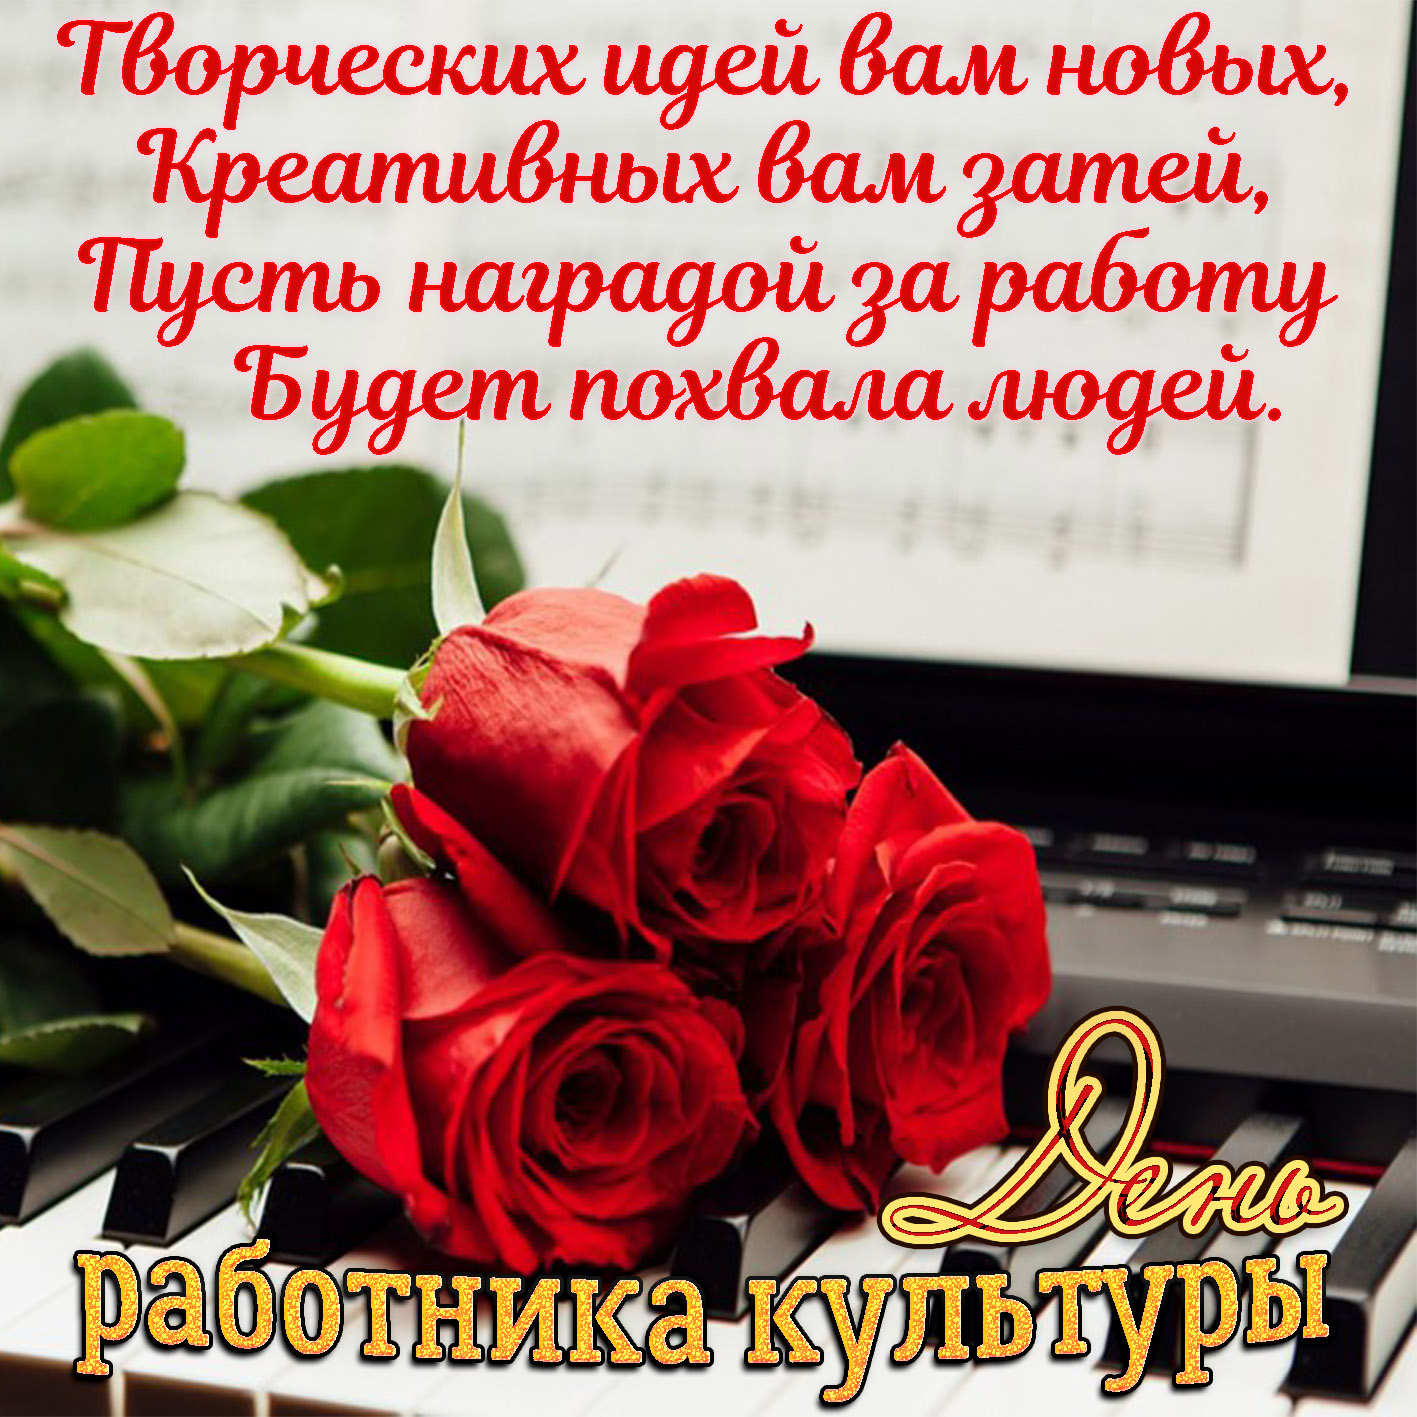 Открытка на День работника культуры - розы на клавишах и доброе поздравление